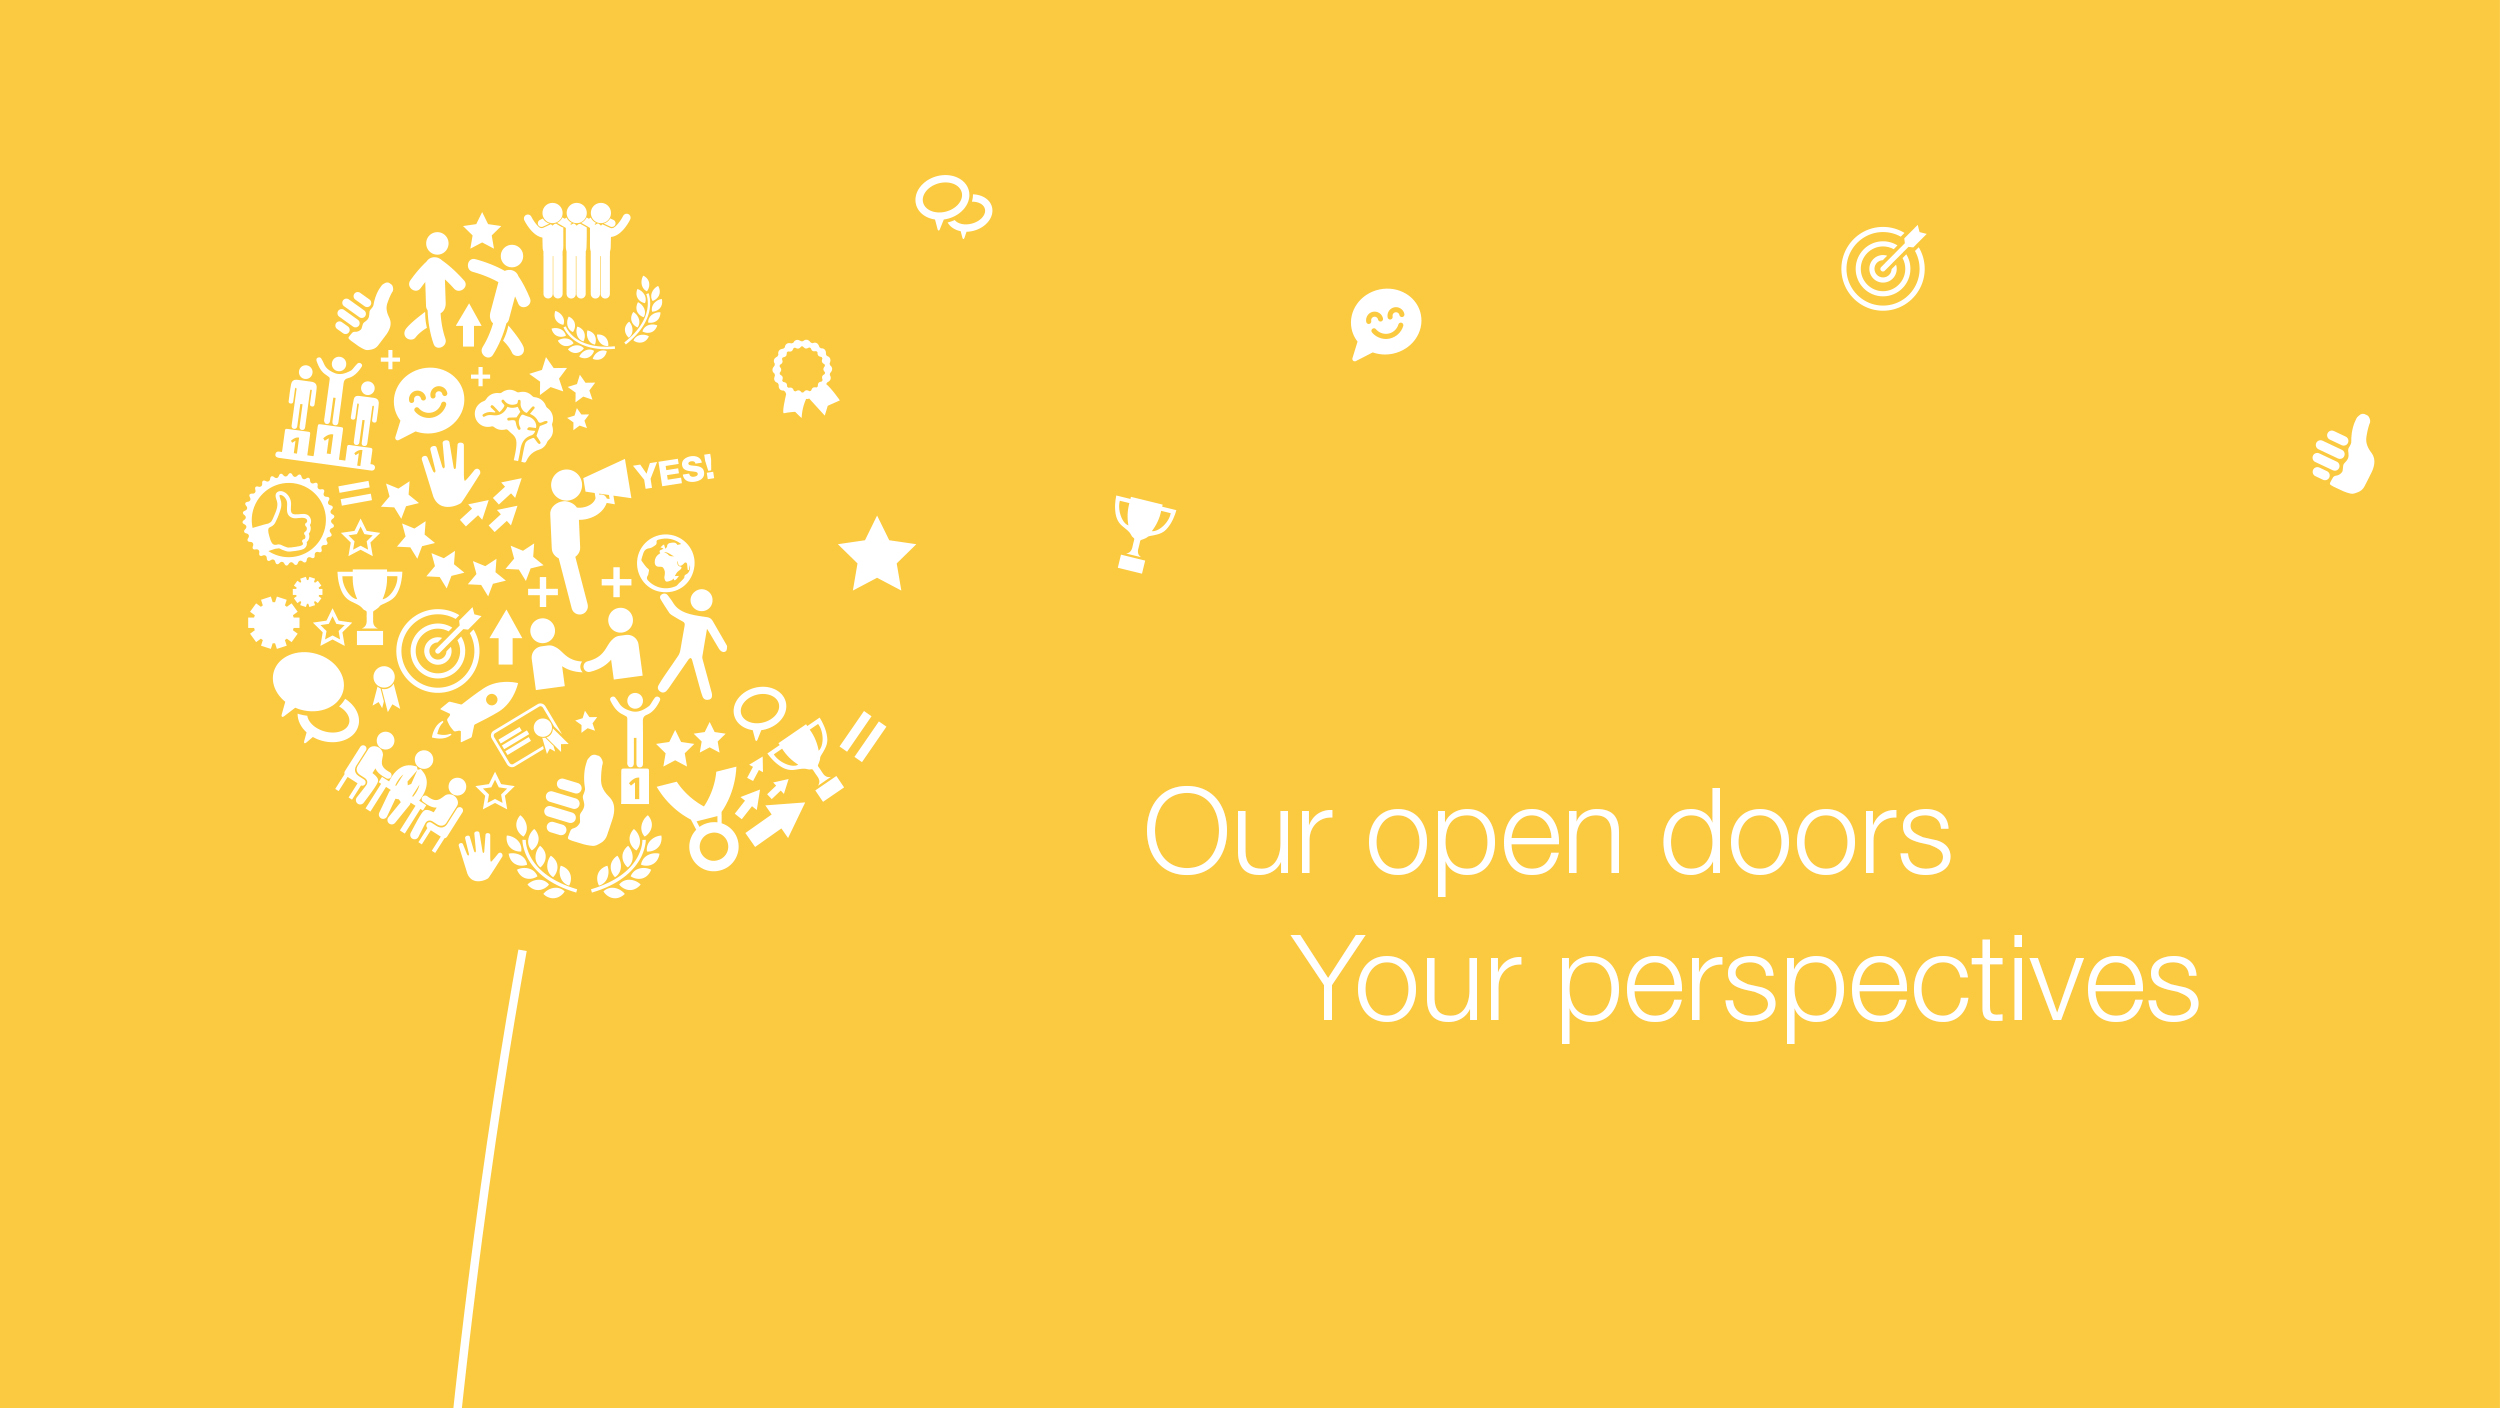 Pusteblume aus verschiedenen Icons, daneben der Slogan: Our open doors Your perspectives